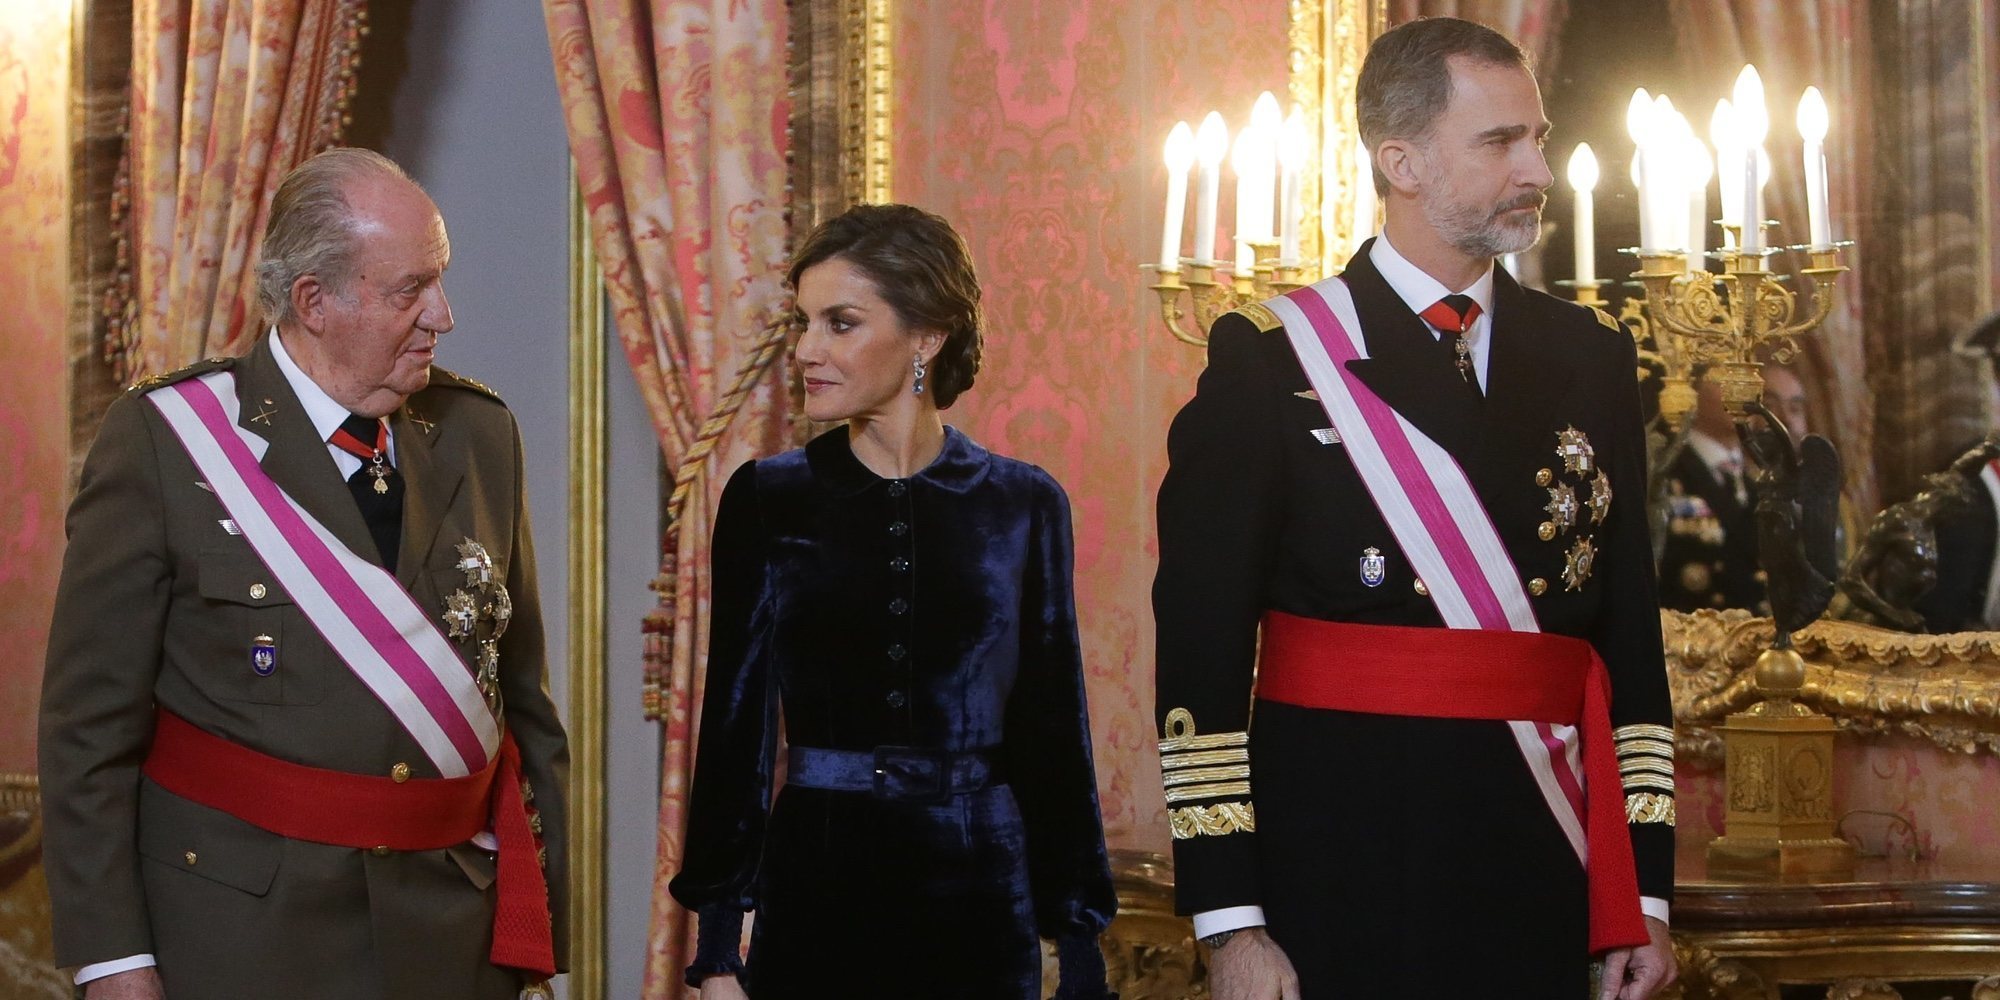 El Rey Juan Carlos le pidió a su hijo que se divorciara hasta en dos ocasiones